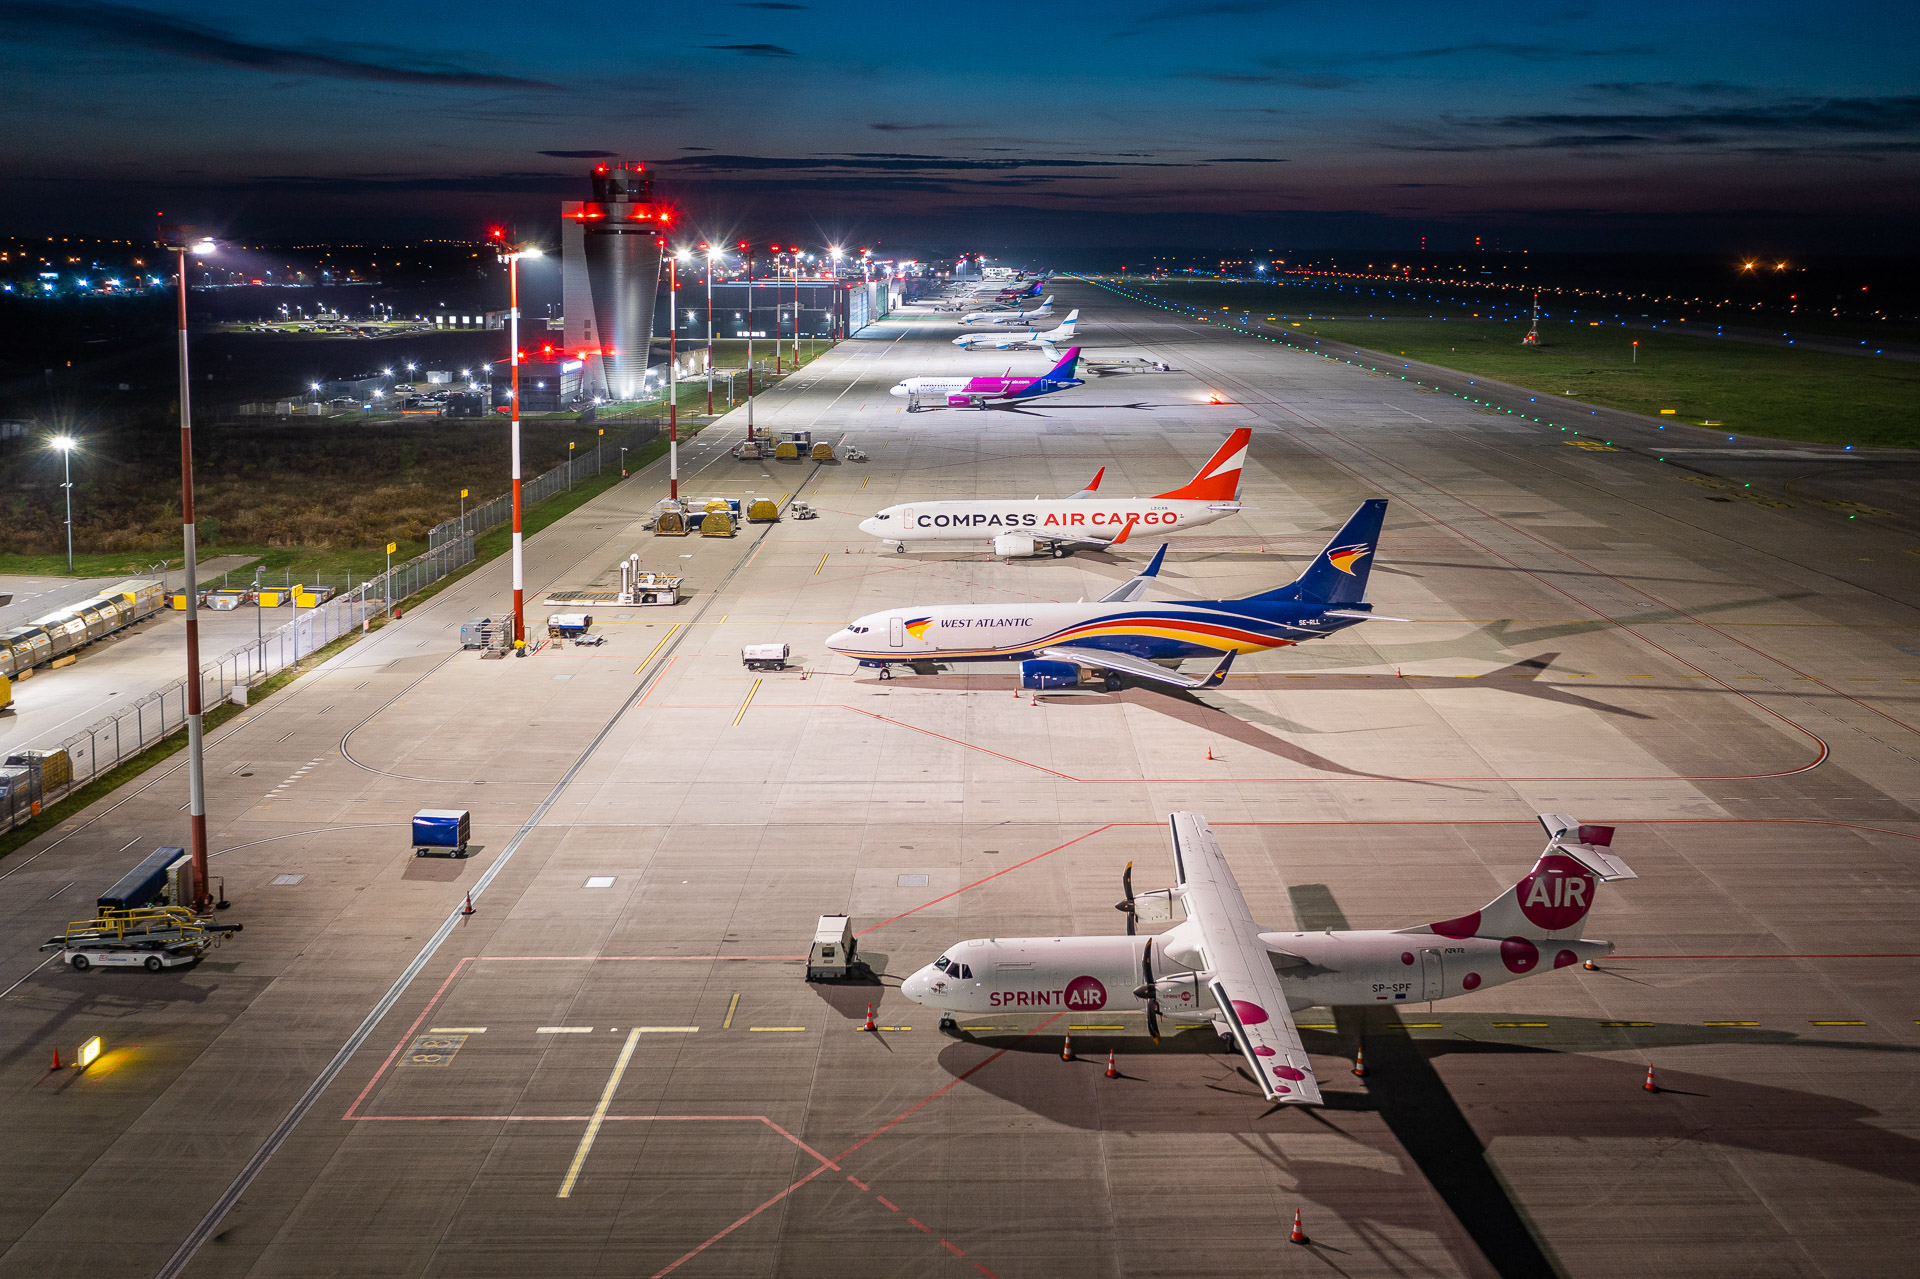 L'aéroport de Katowice atteint un mois de novembre record avec plus de 300,000 XNUMX passagers